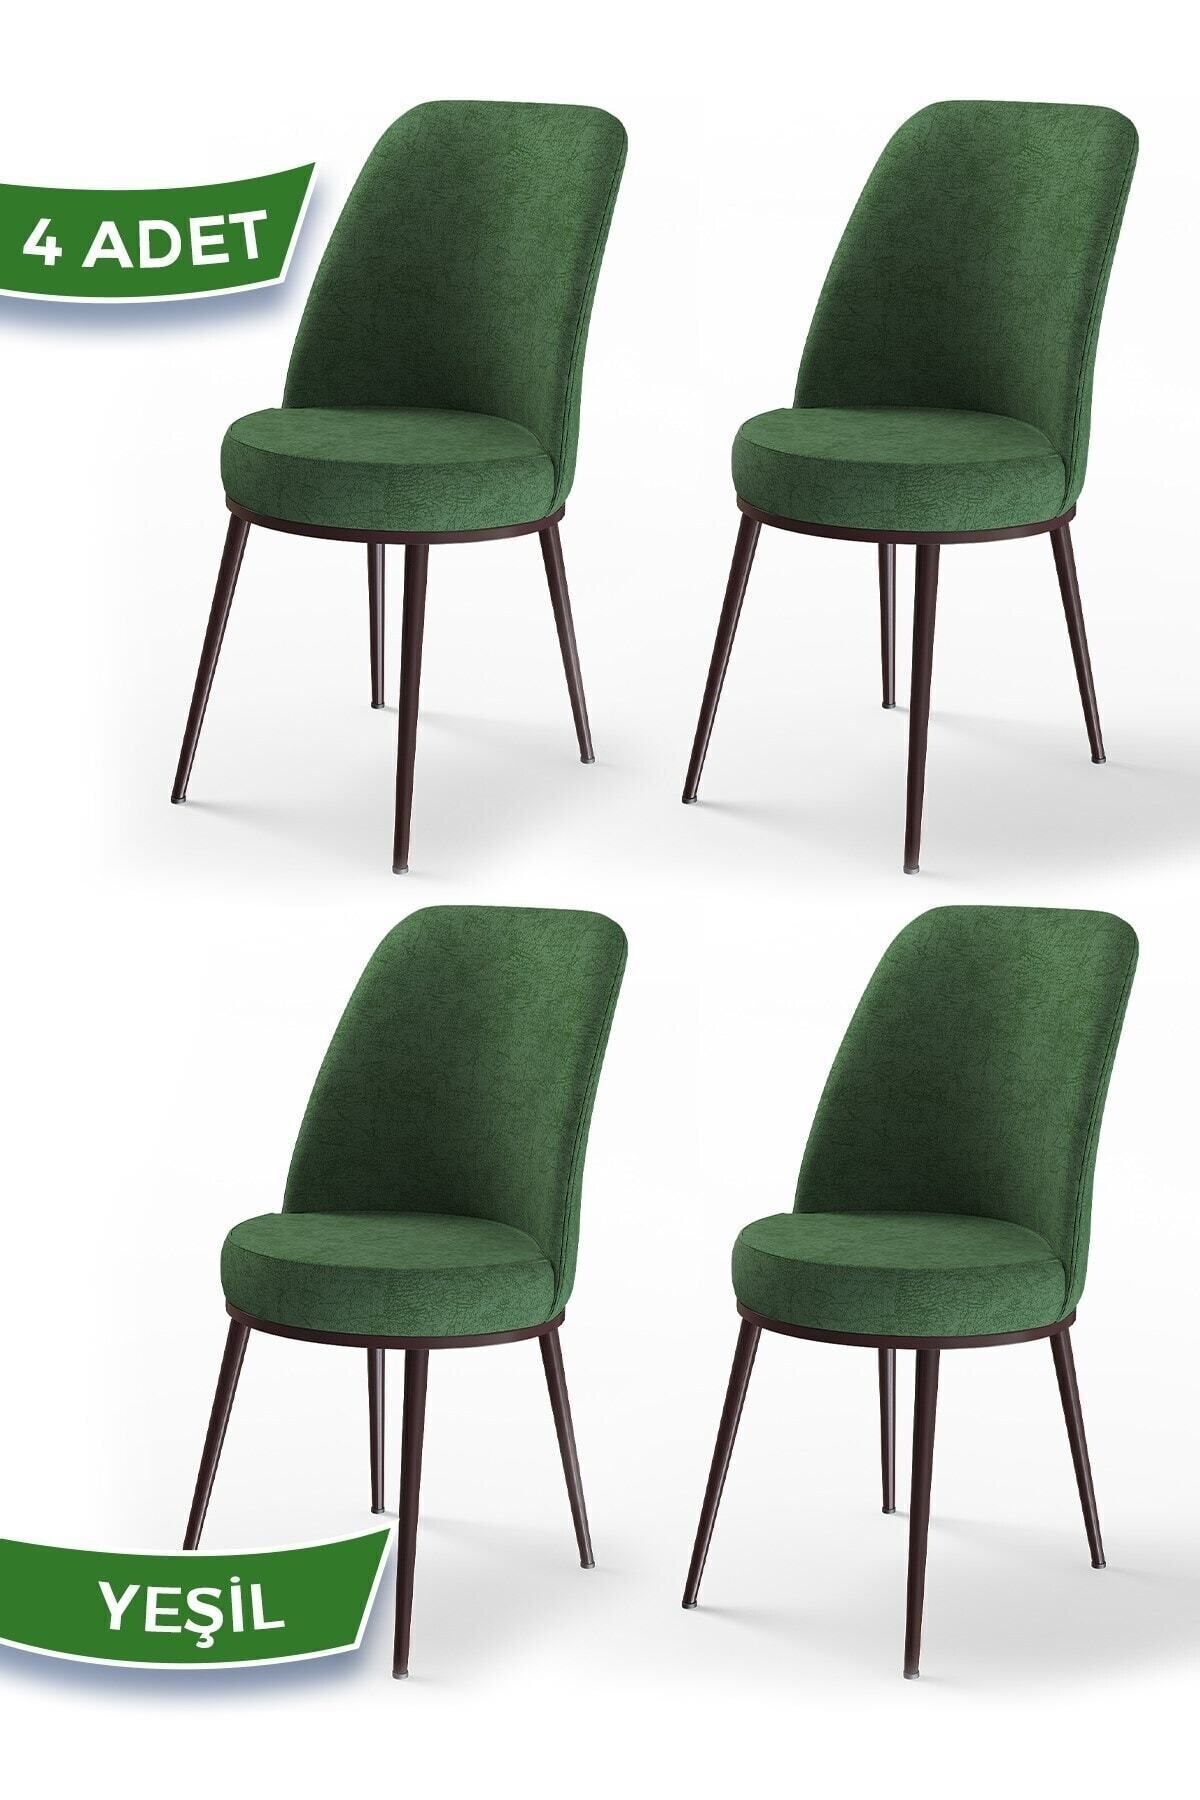 Canisa Dexa Serisi, Üst Kalite Mutfak Sandalyesi,4 Adet Haki Yeşil Sandalye, Metal Kahverengi Iskeletli